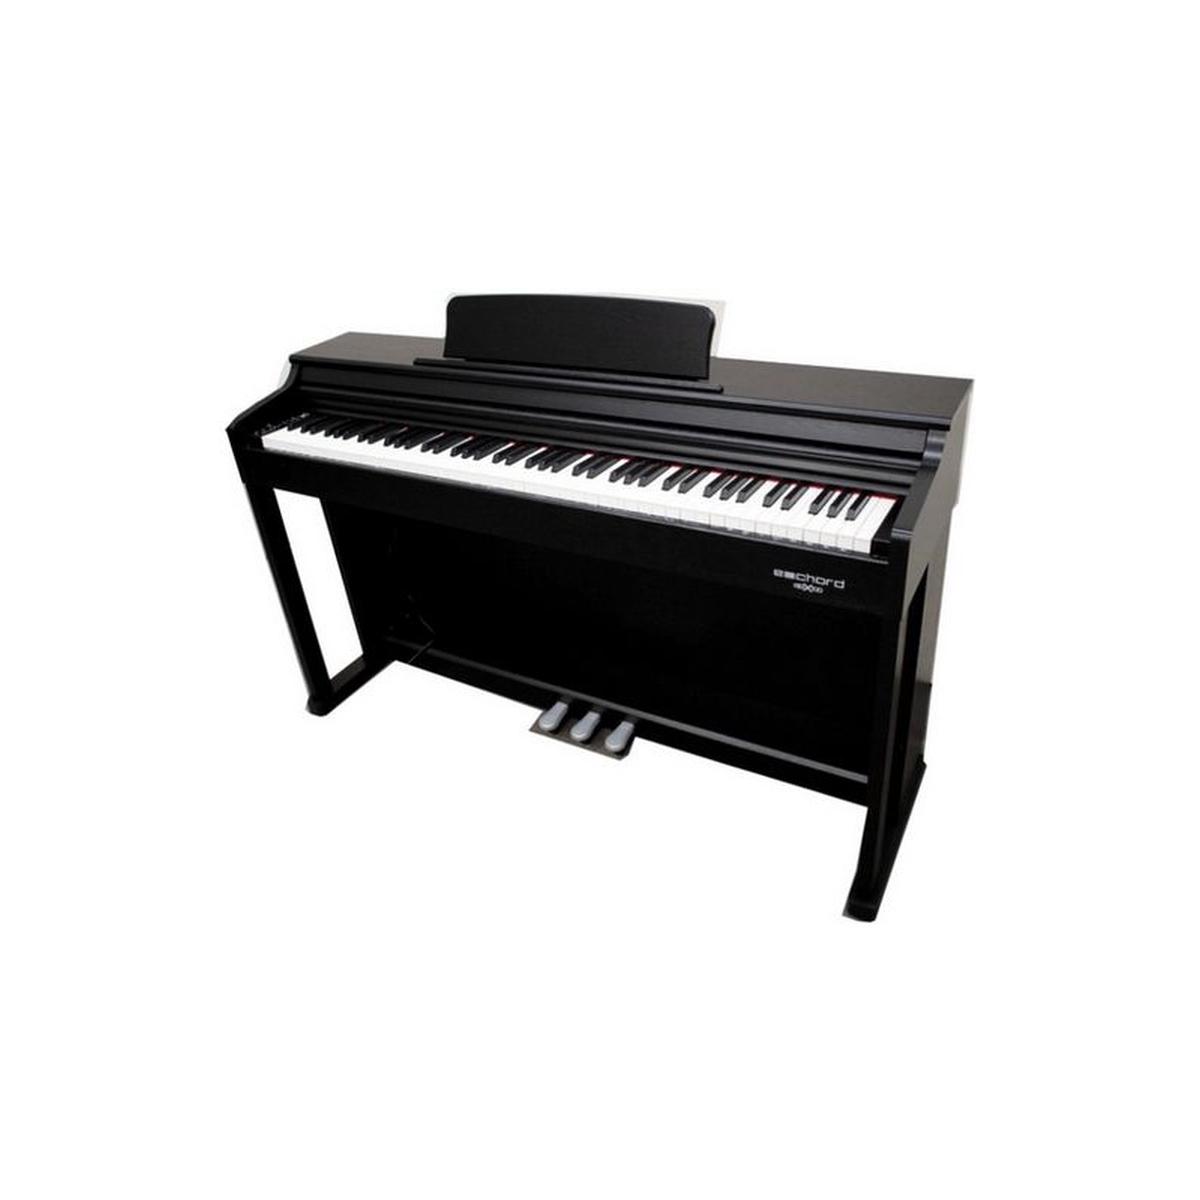 Fbt Echord Dpx 100 pianoforte 88 tasti pesati nero